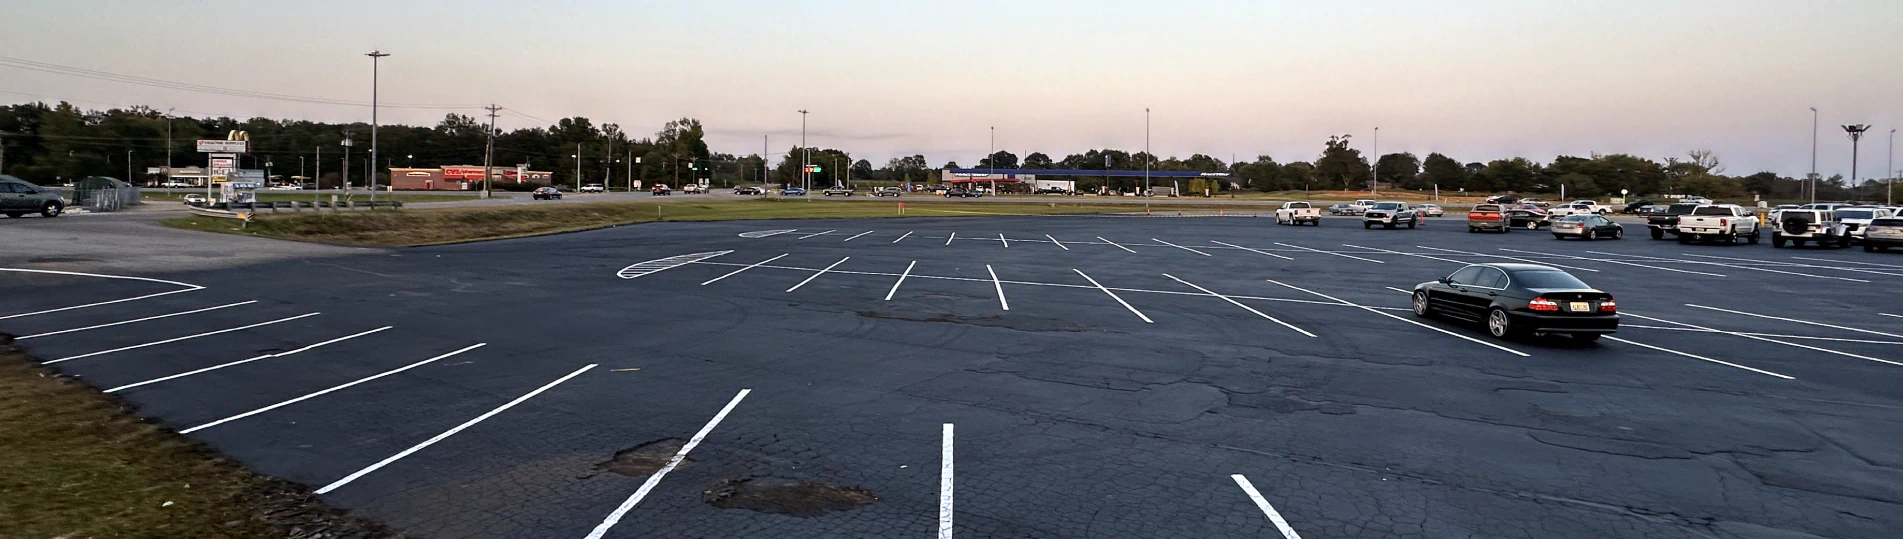 client photo painted parking lot